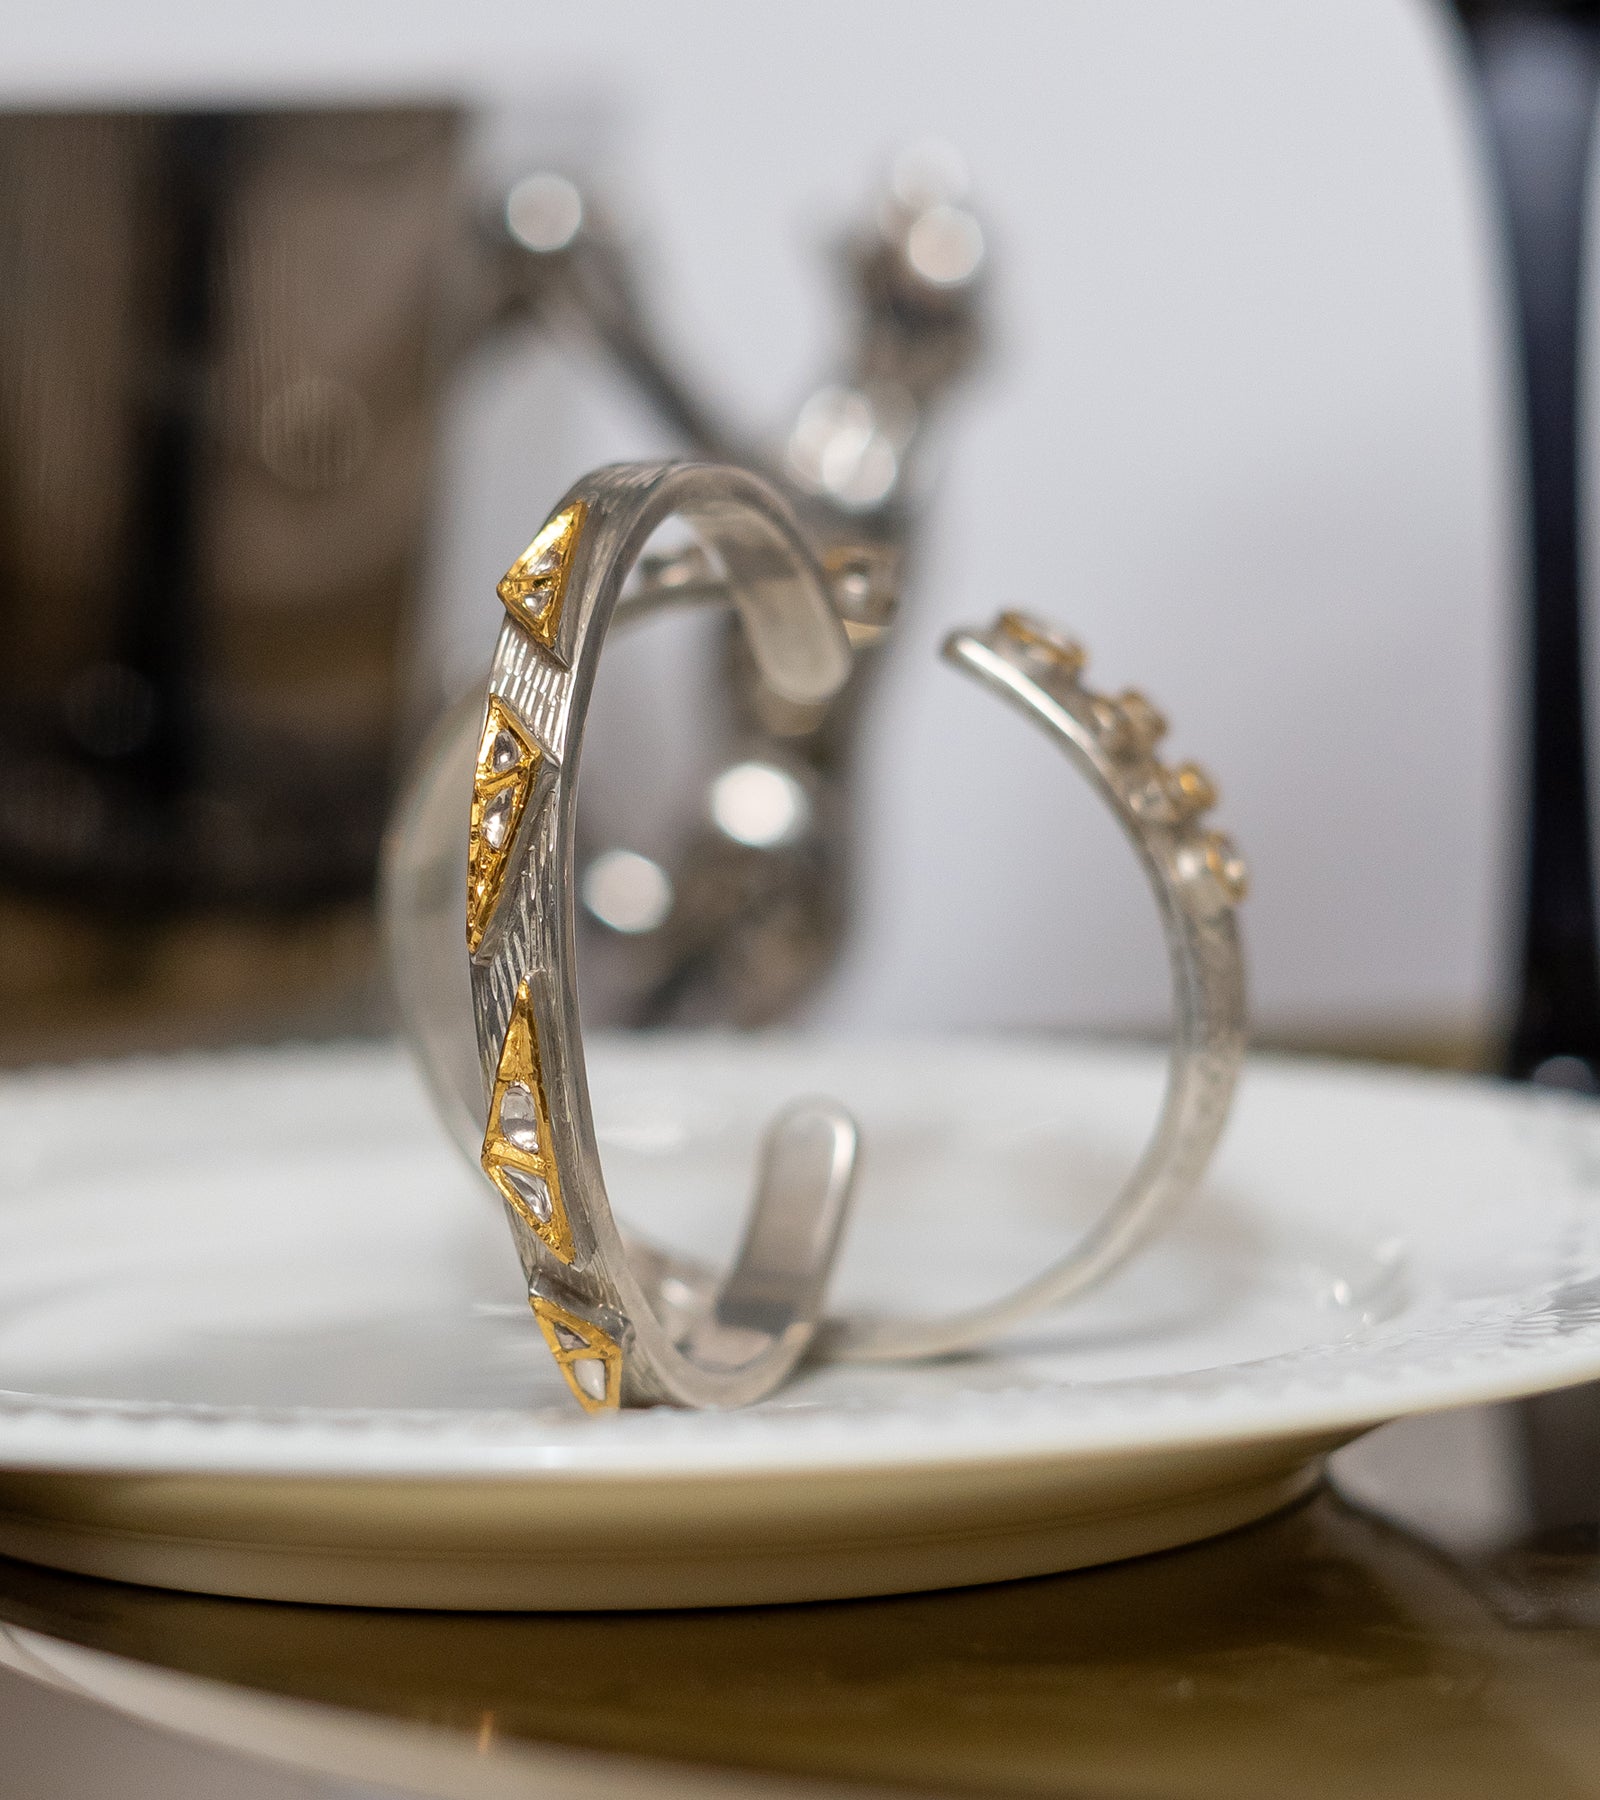 Gold Bracelets by UNCUT Jewelry